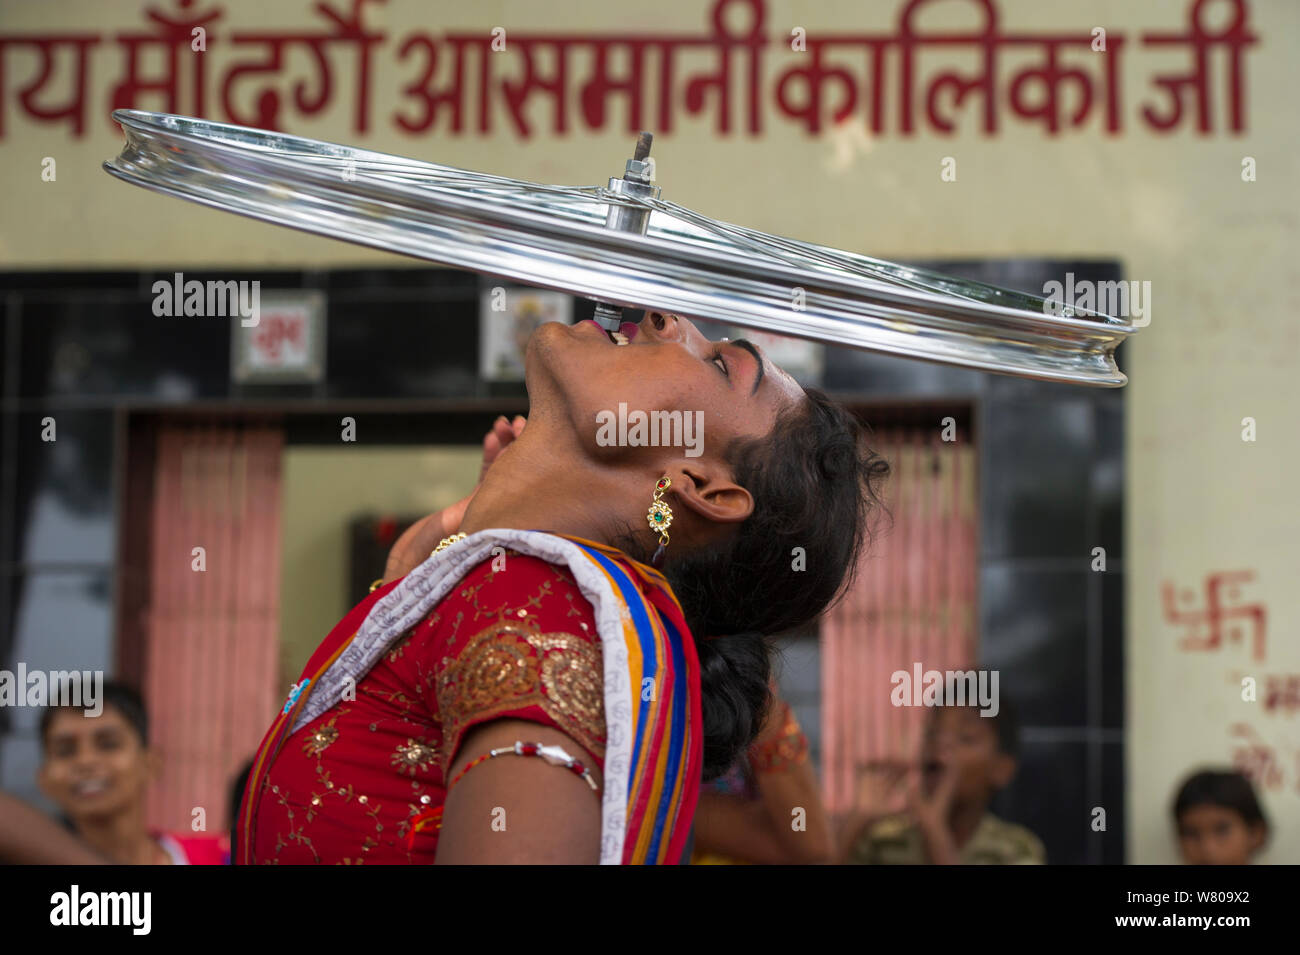 Hijra Performer, Balancing Fahrrad Rad auf die Zähne. Hijra sind Transgender, rechtlich als drittes Geschlecht in Indien anerkannt. Uttar Pradesh, Indien, Oktober 2014. Stockfoto